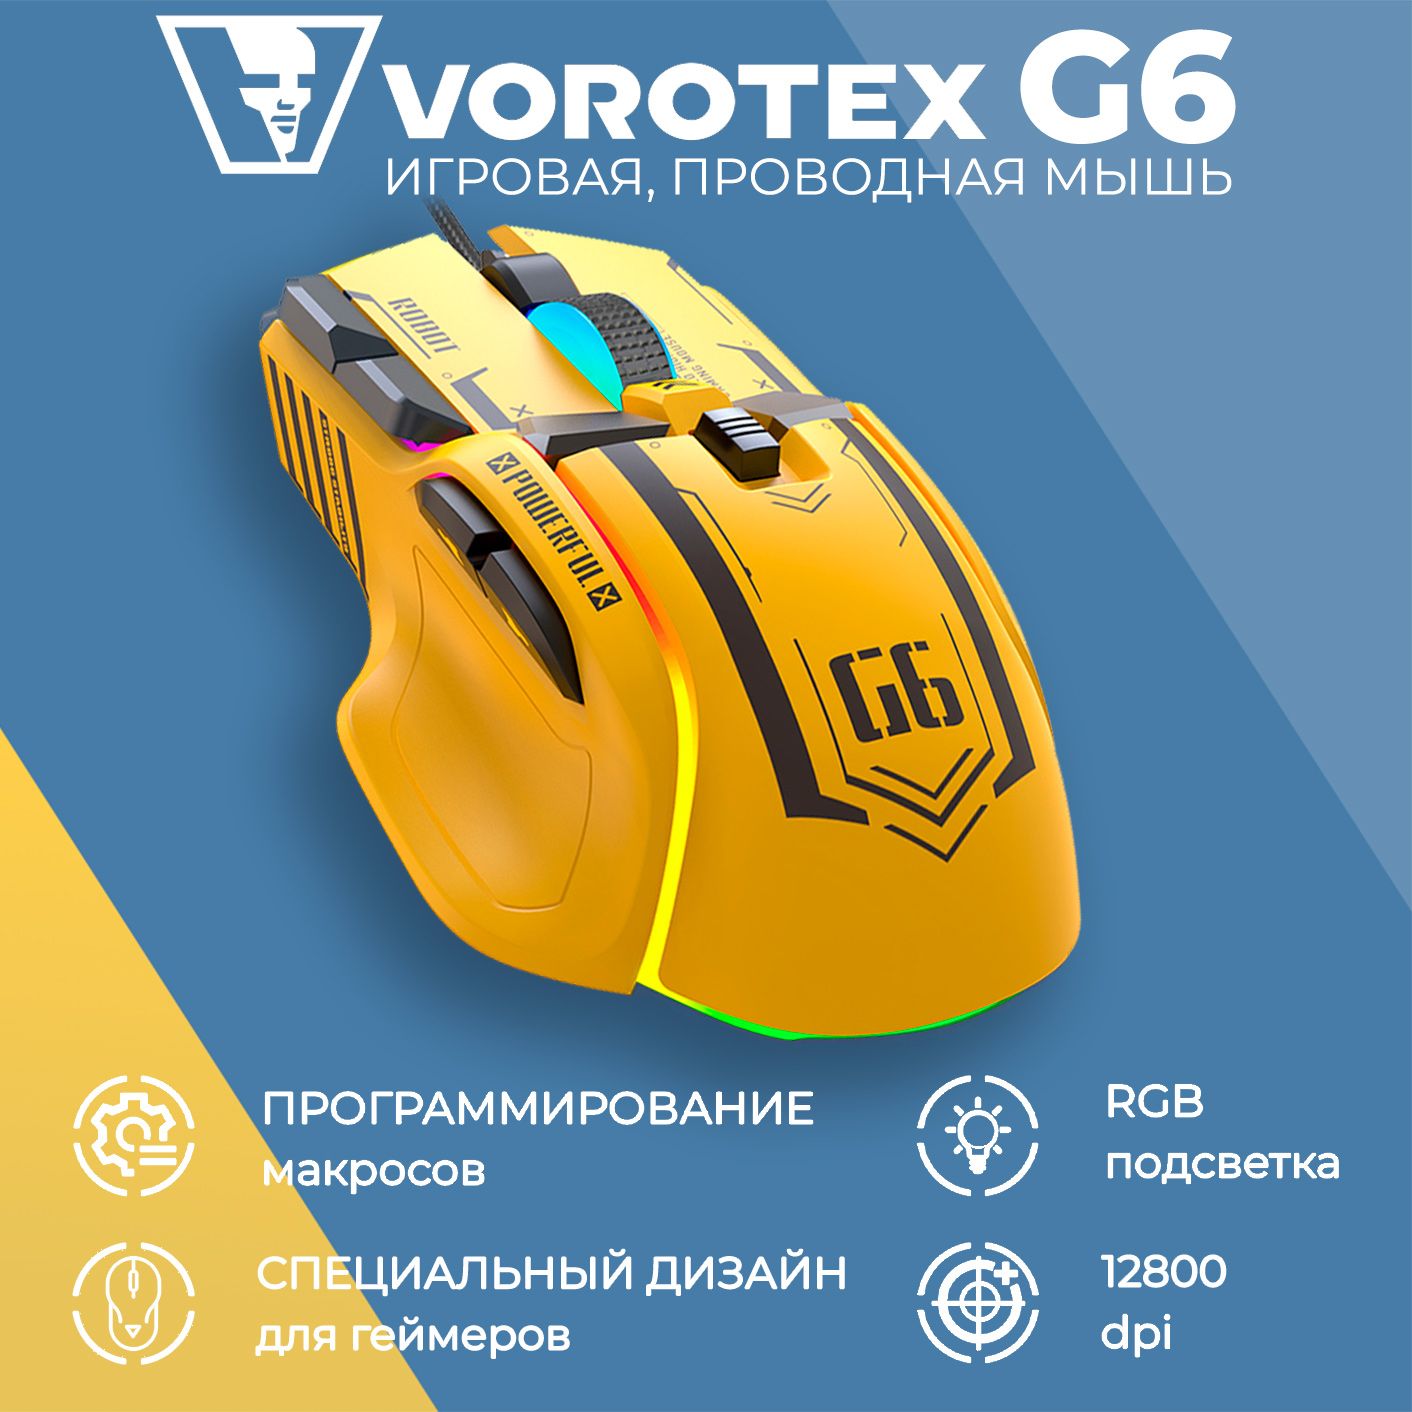 ИгроваямышьпроводнаяVOROTEXG6,желтый